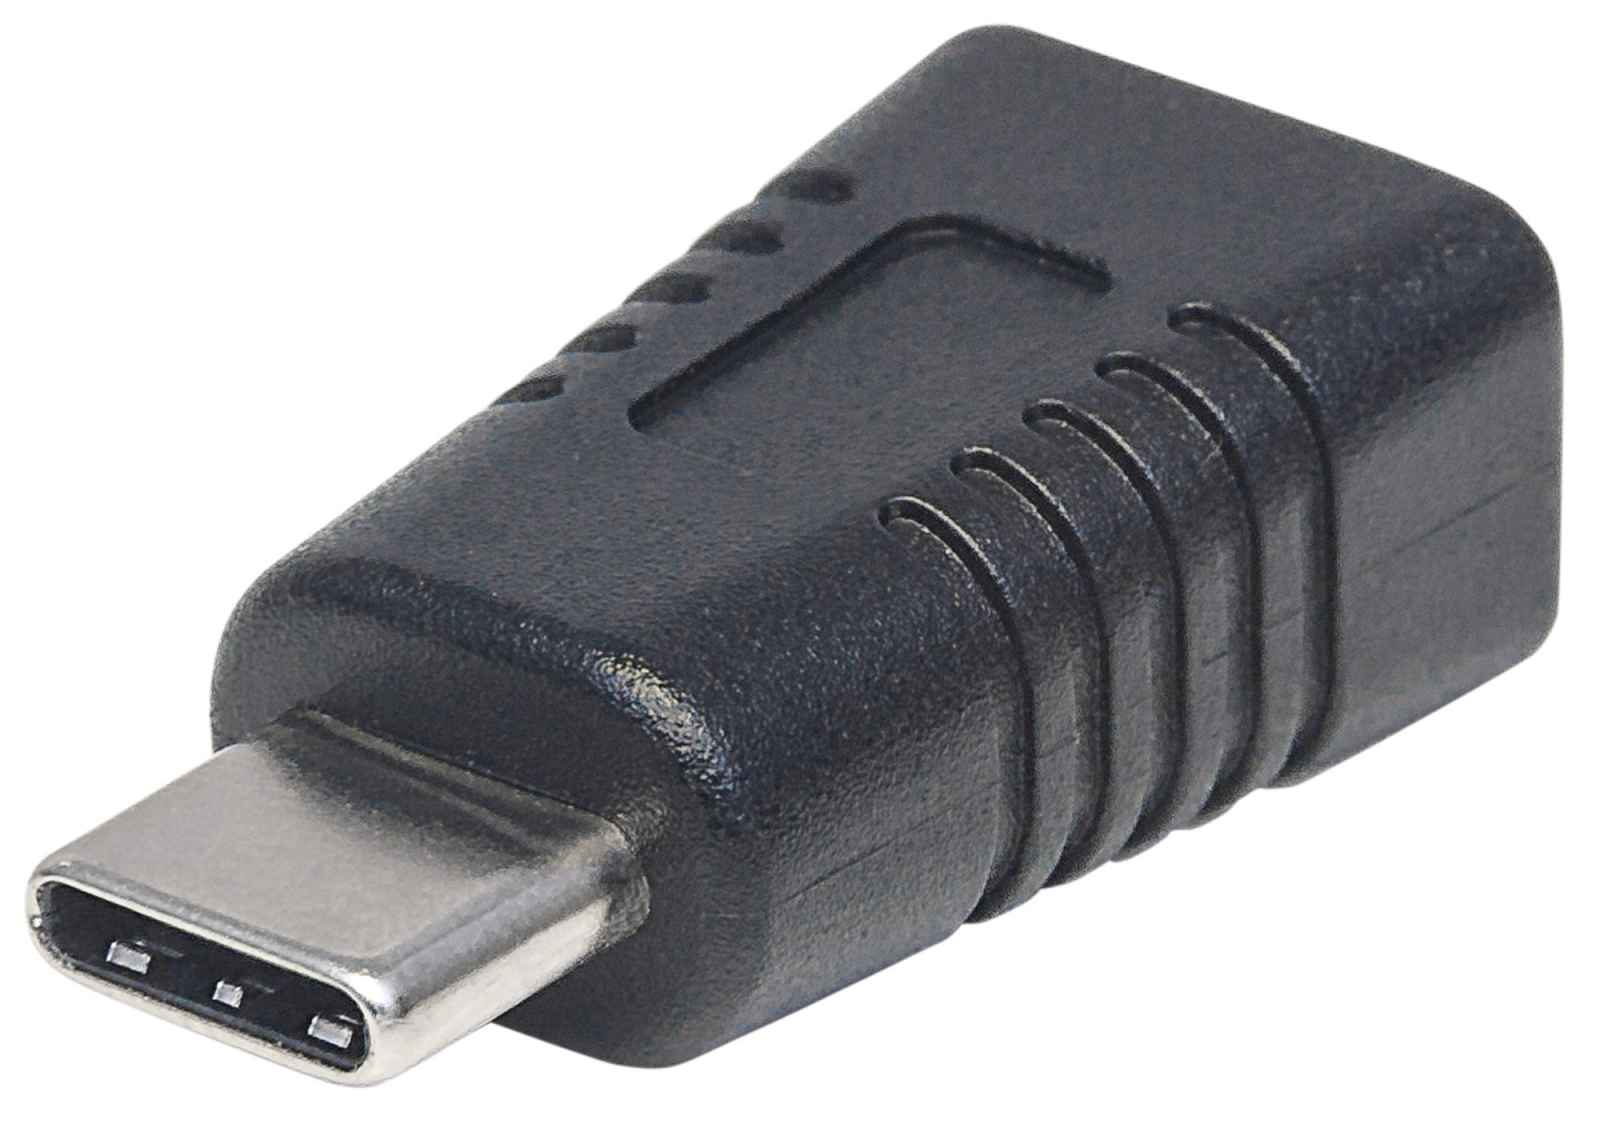 Adaptador Tipo C a Micro USB - PuntoElectronic